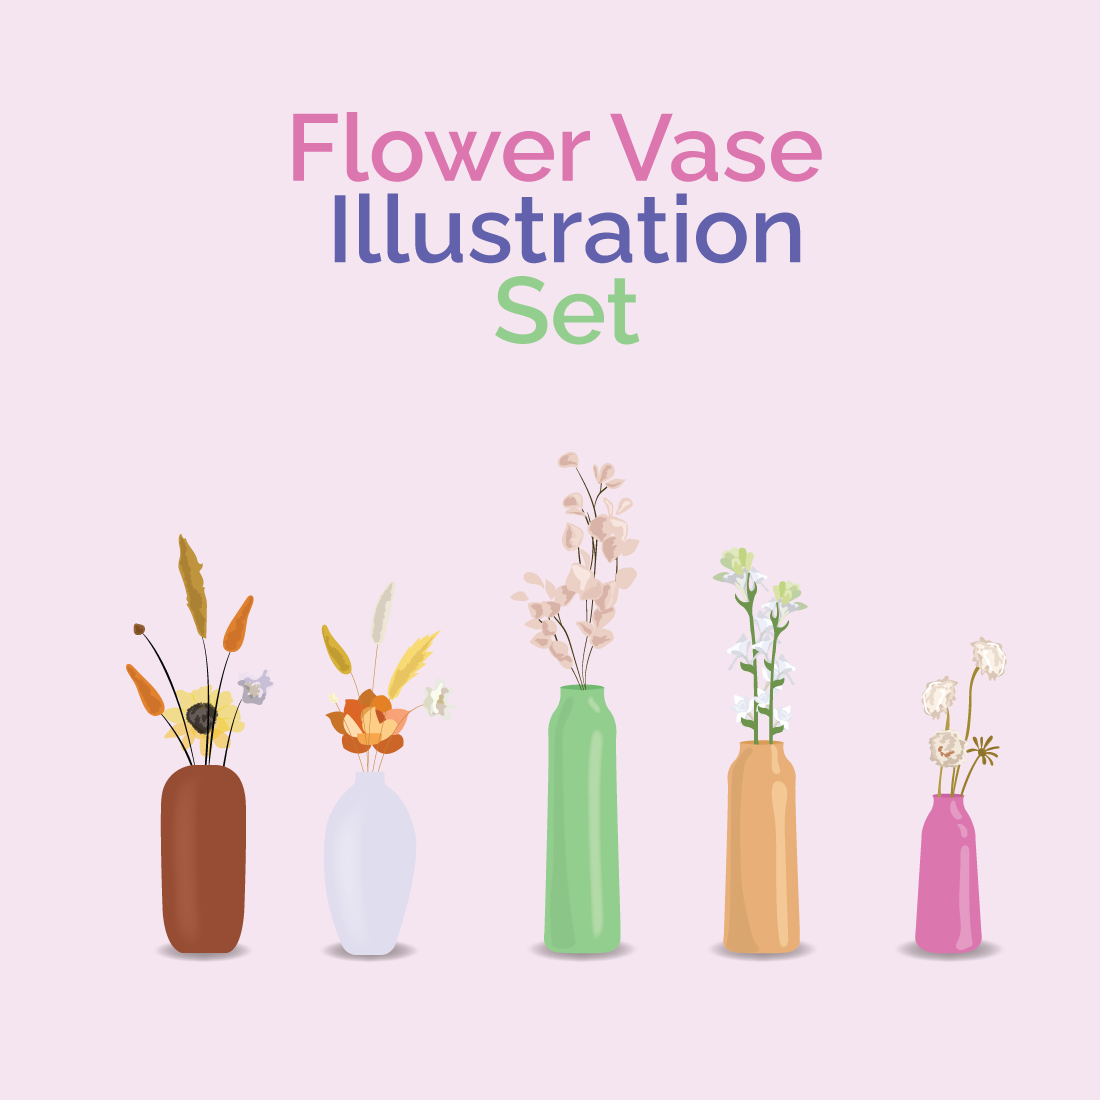 Flower Vase Illustration Set cover image.